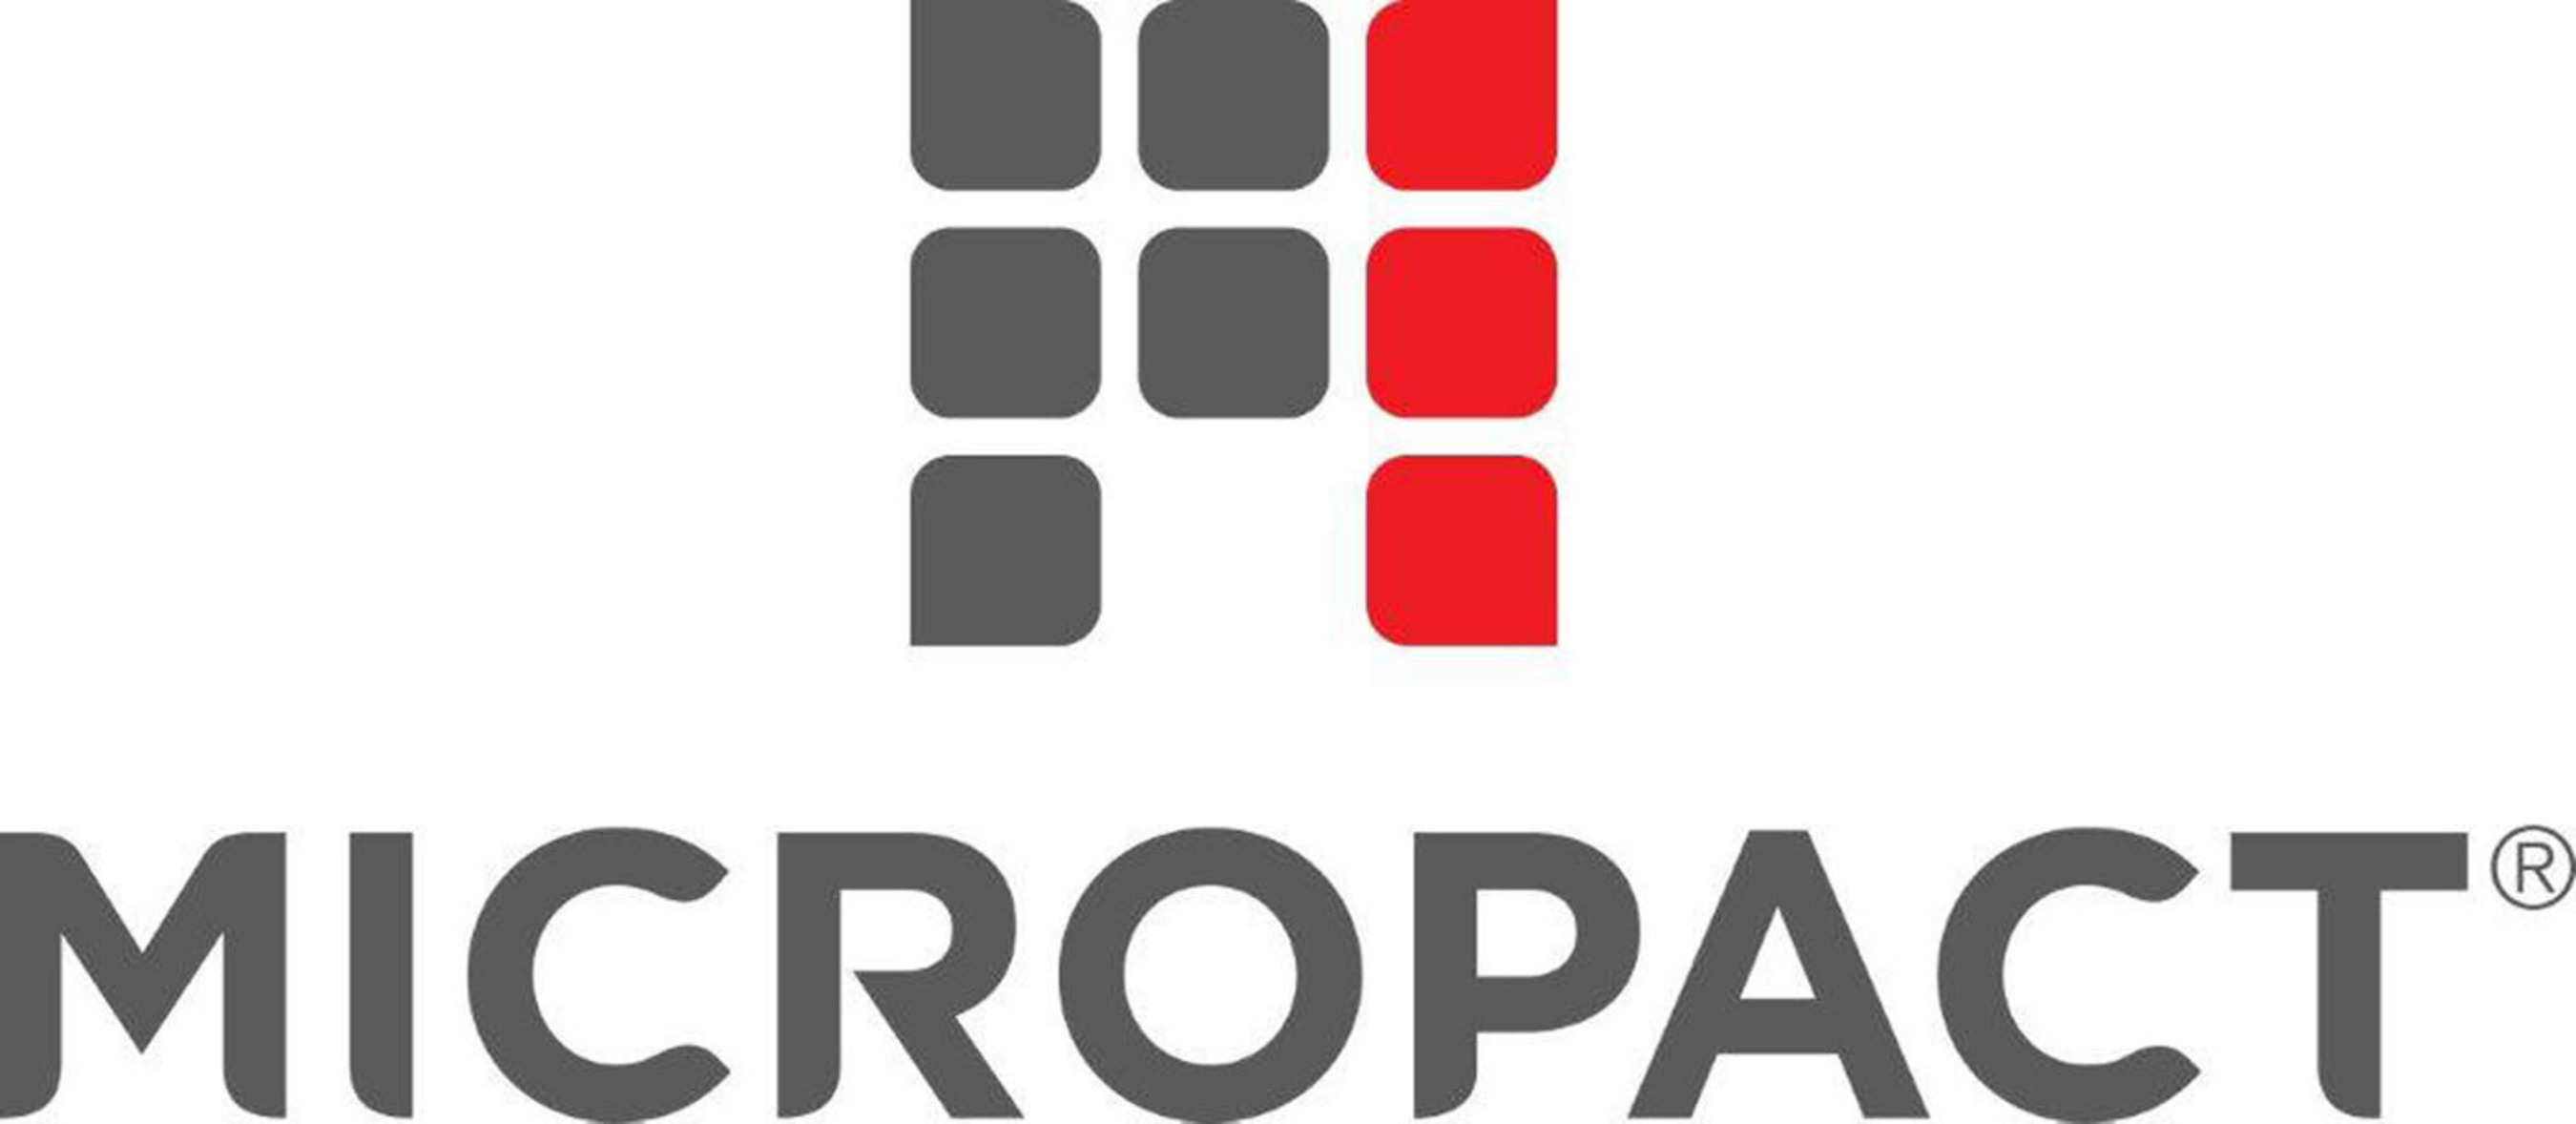 MicroPact logo. (PRNewsFoto/MicroPact) (PRNewsFoto/)